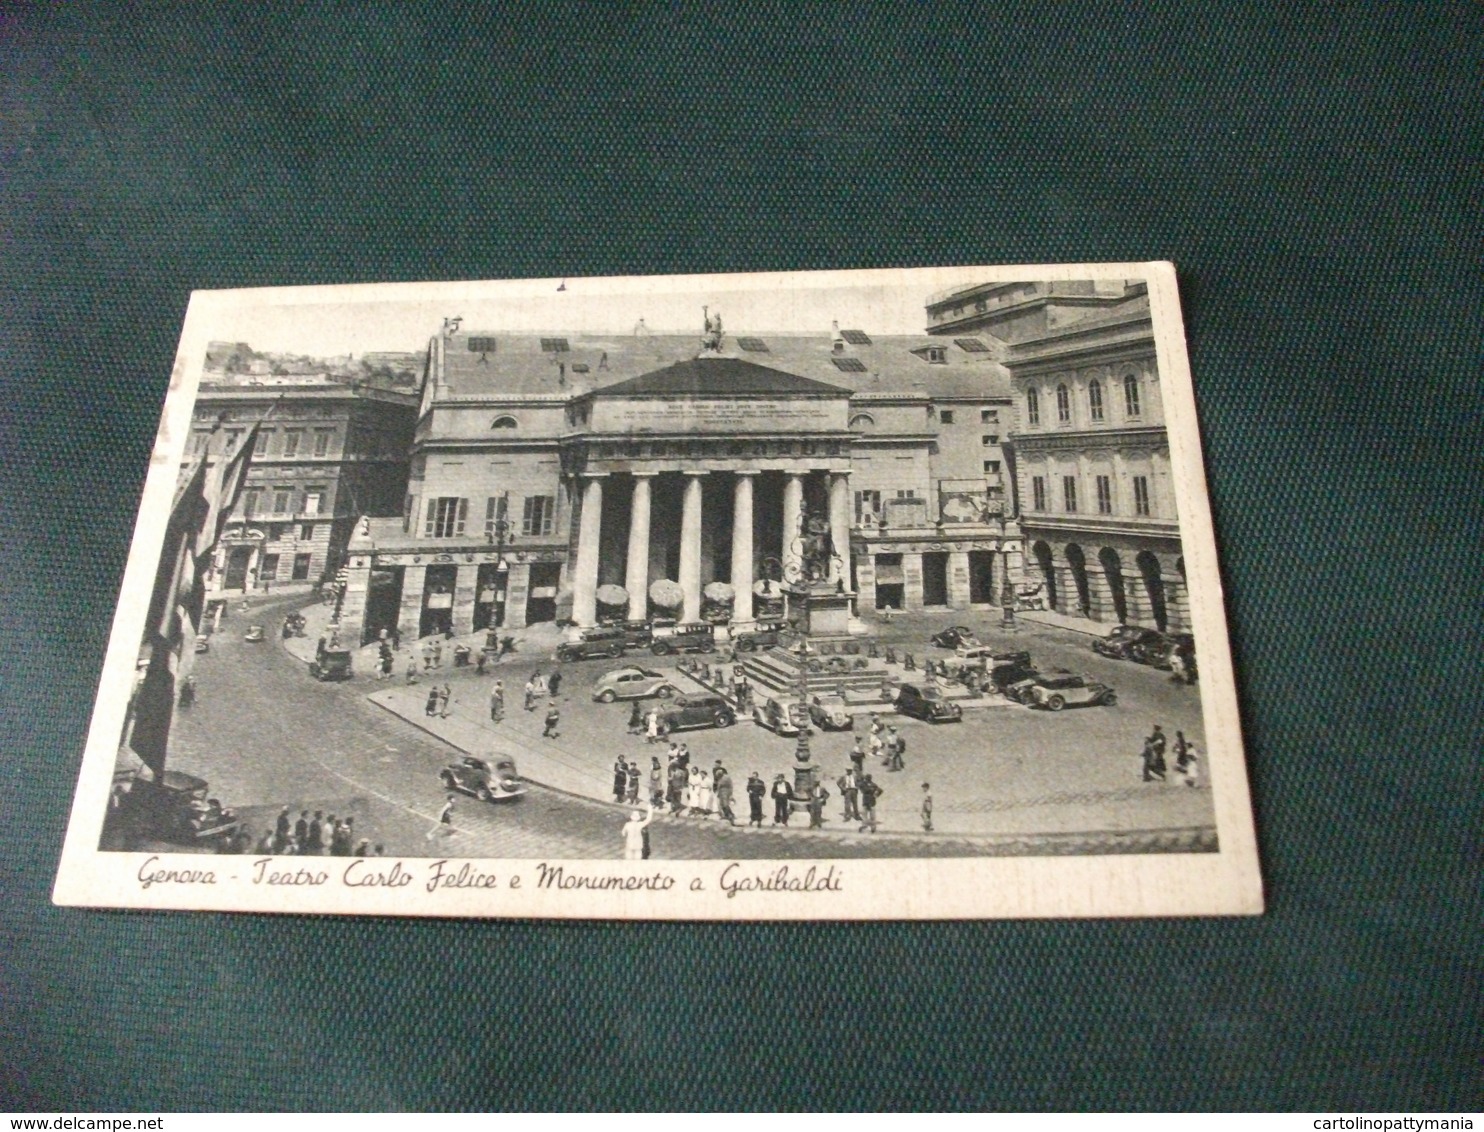 GENOVA TEATRO CARLO FELICE E MONUMENTO A GARIBALDI RETRO TIMBRO 21° REPARTO SALMERIE E CARREGGIO 1939 - Teatro